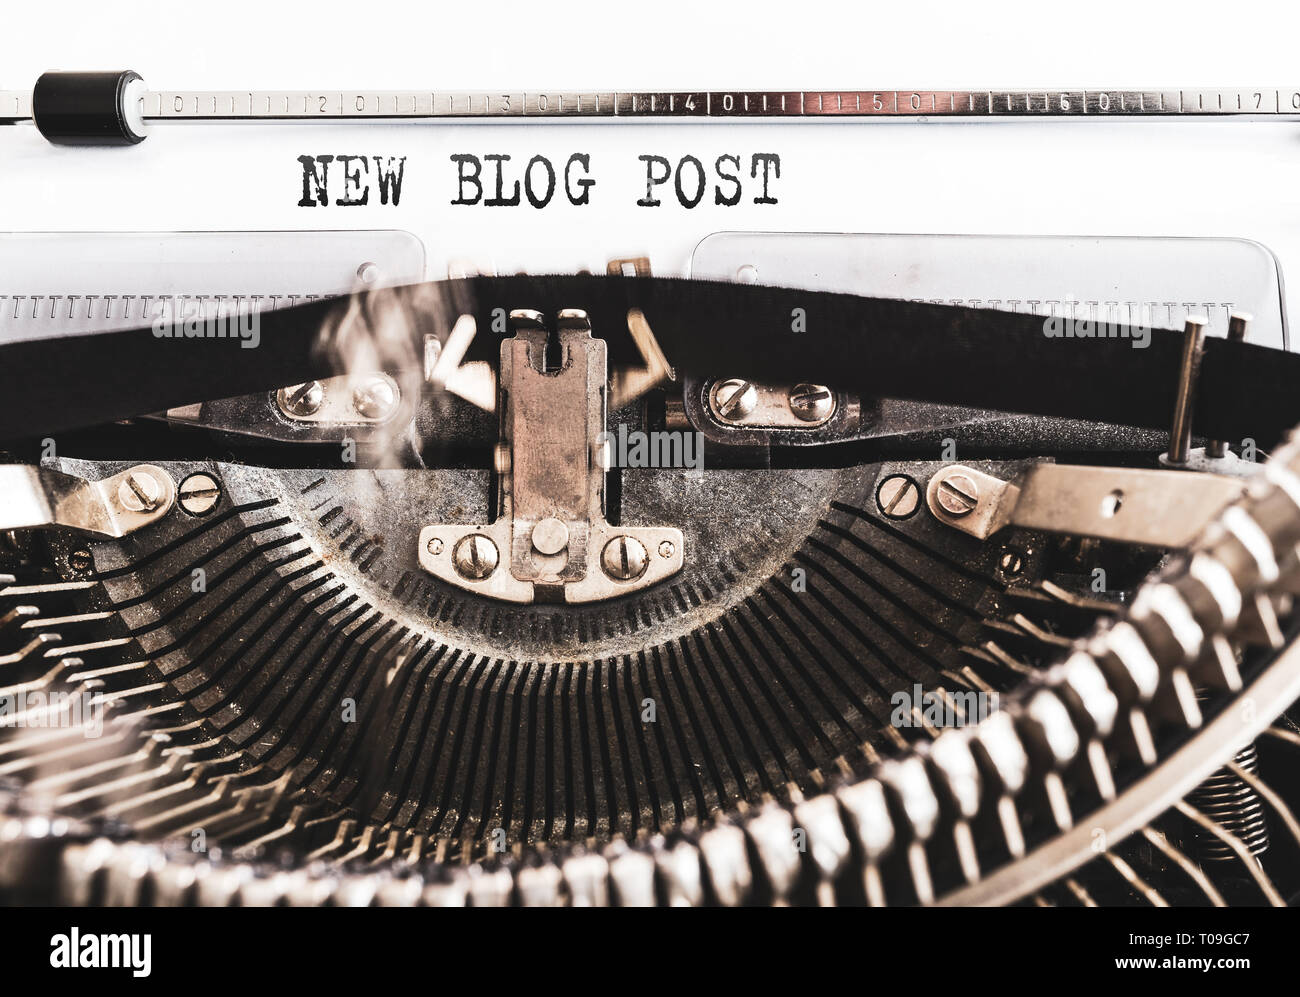 Nuevo post en el blog de palabras escritas en la vieja máquina de escribir manual Foto de stock